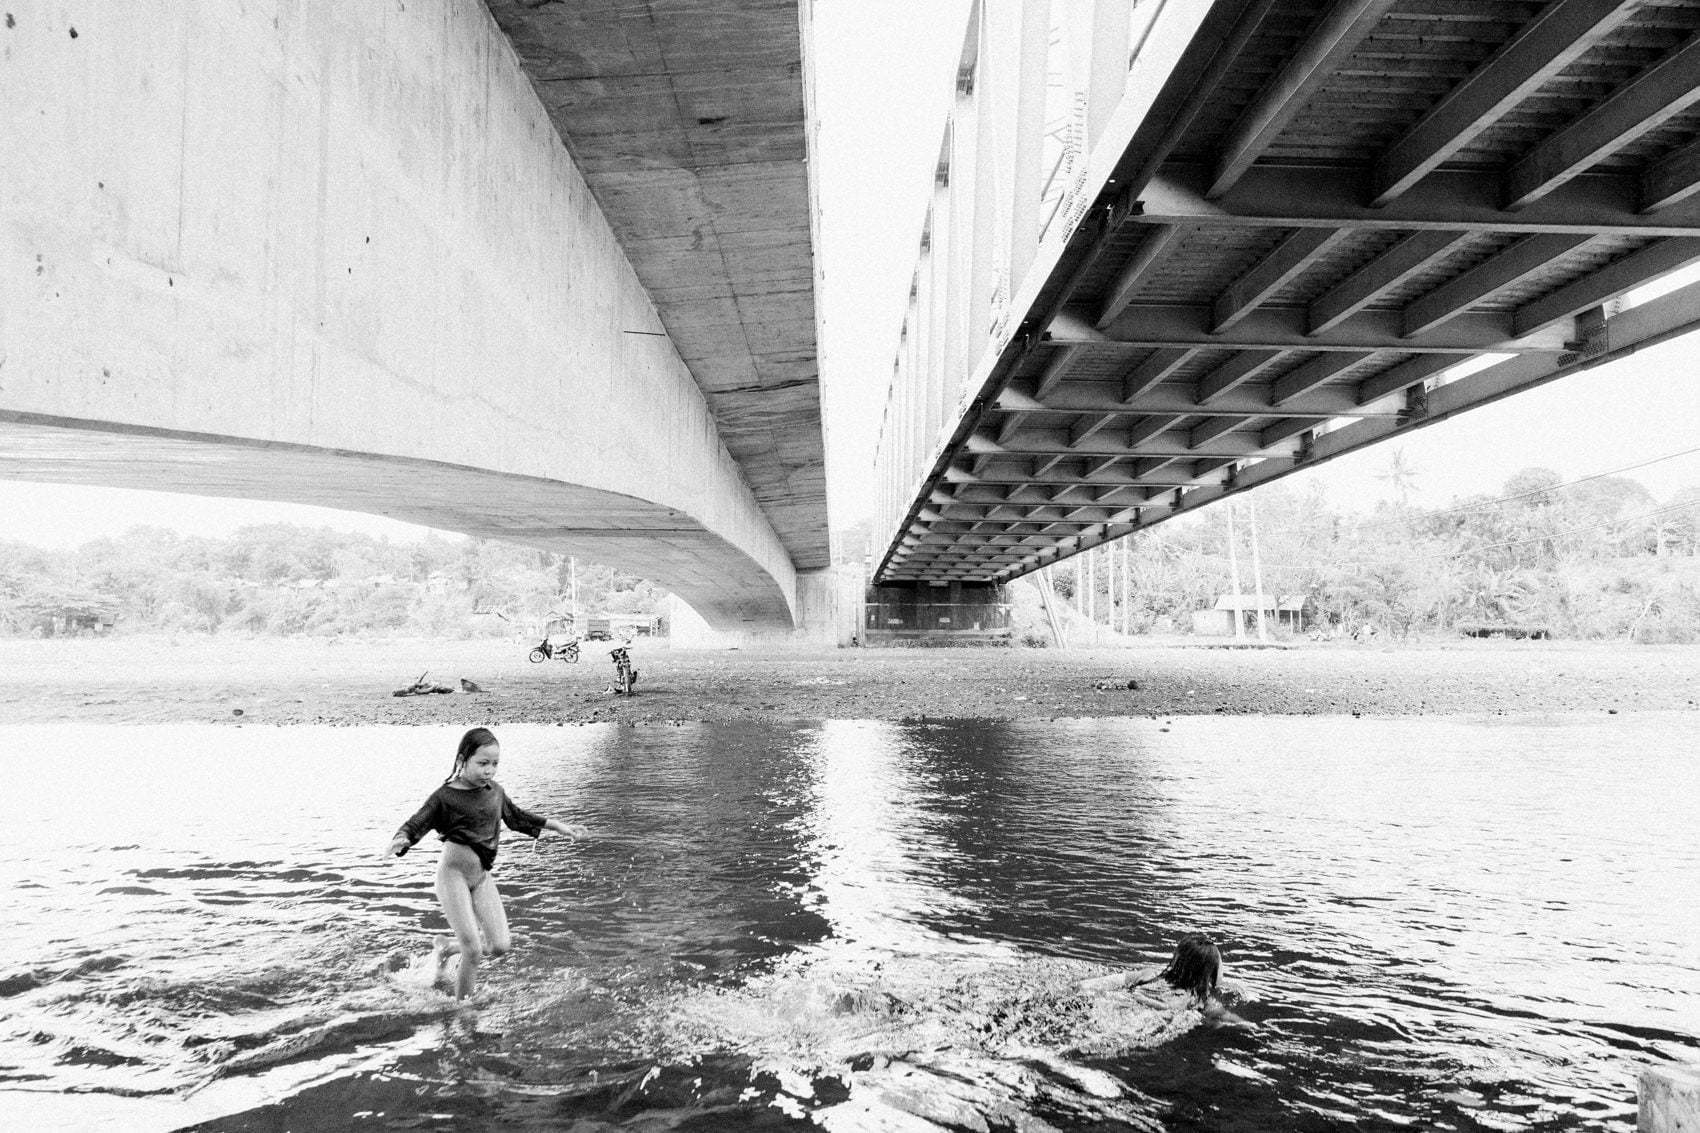 Photo Journal under the Gunaksa bridge in Klungkung